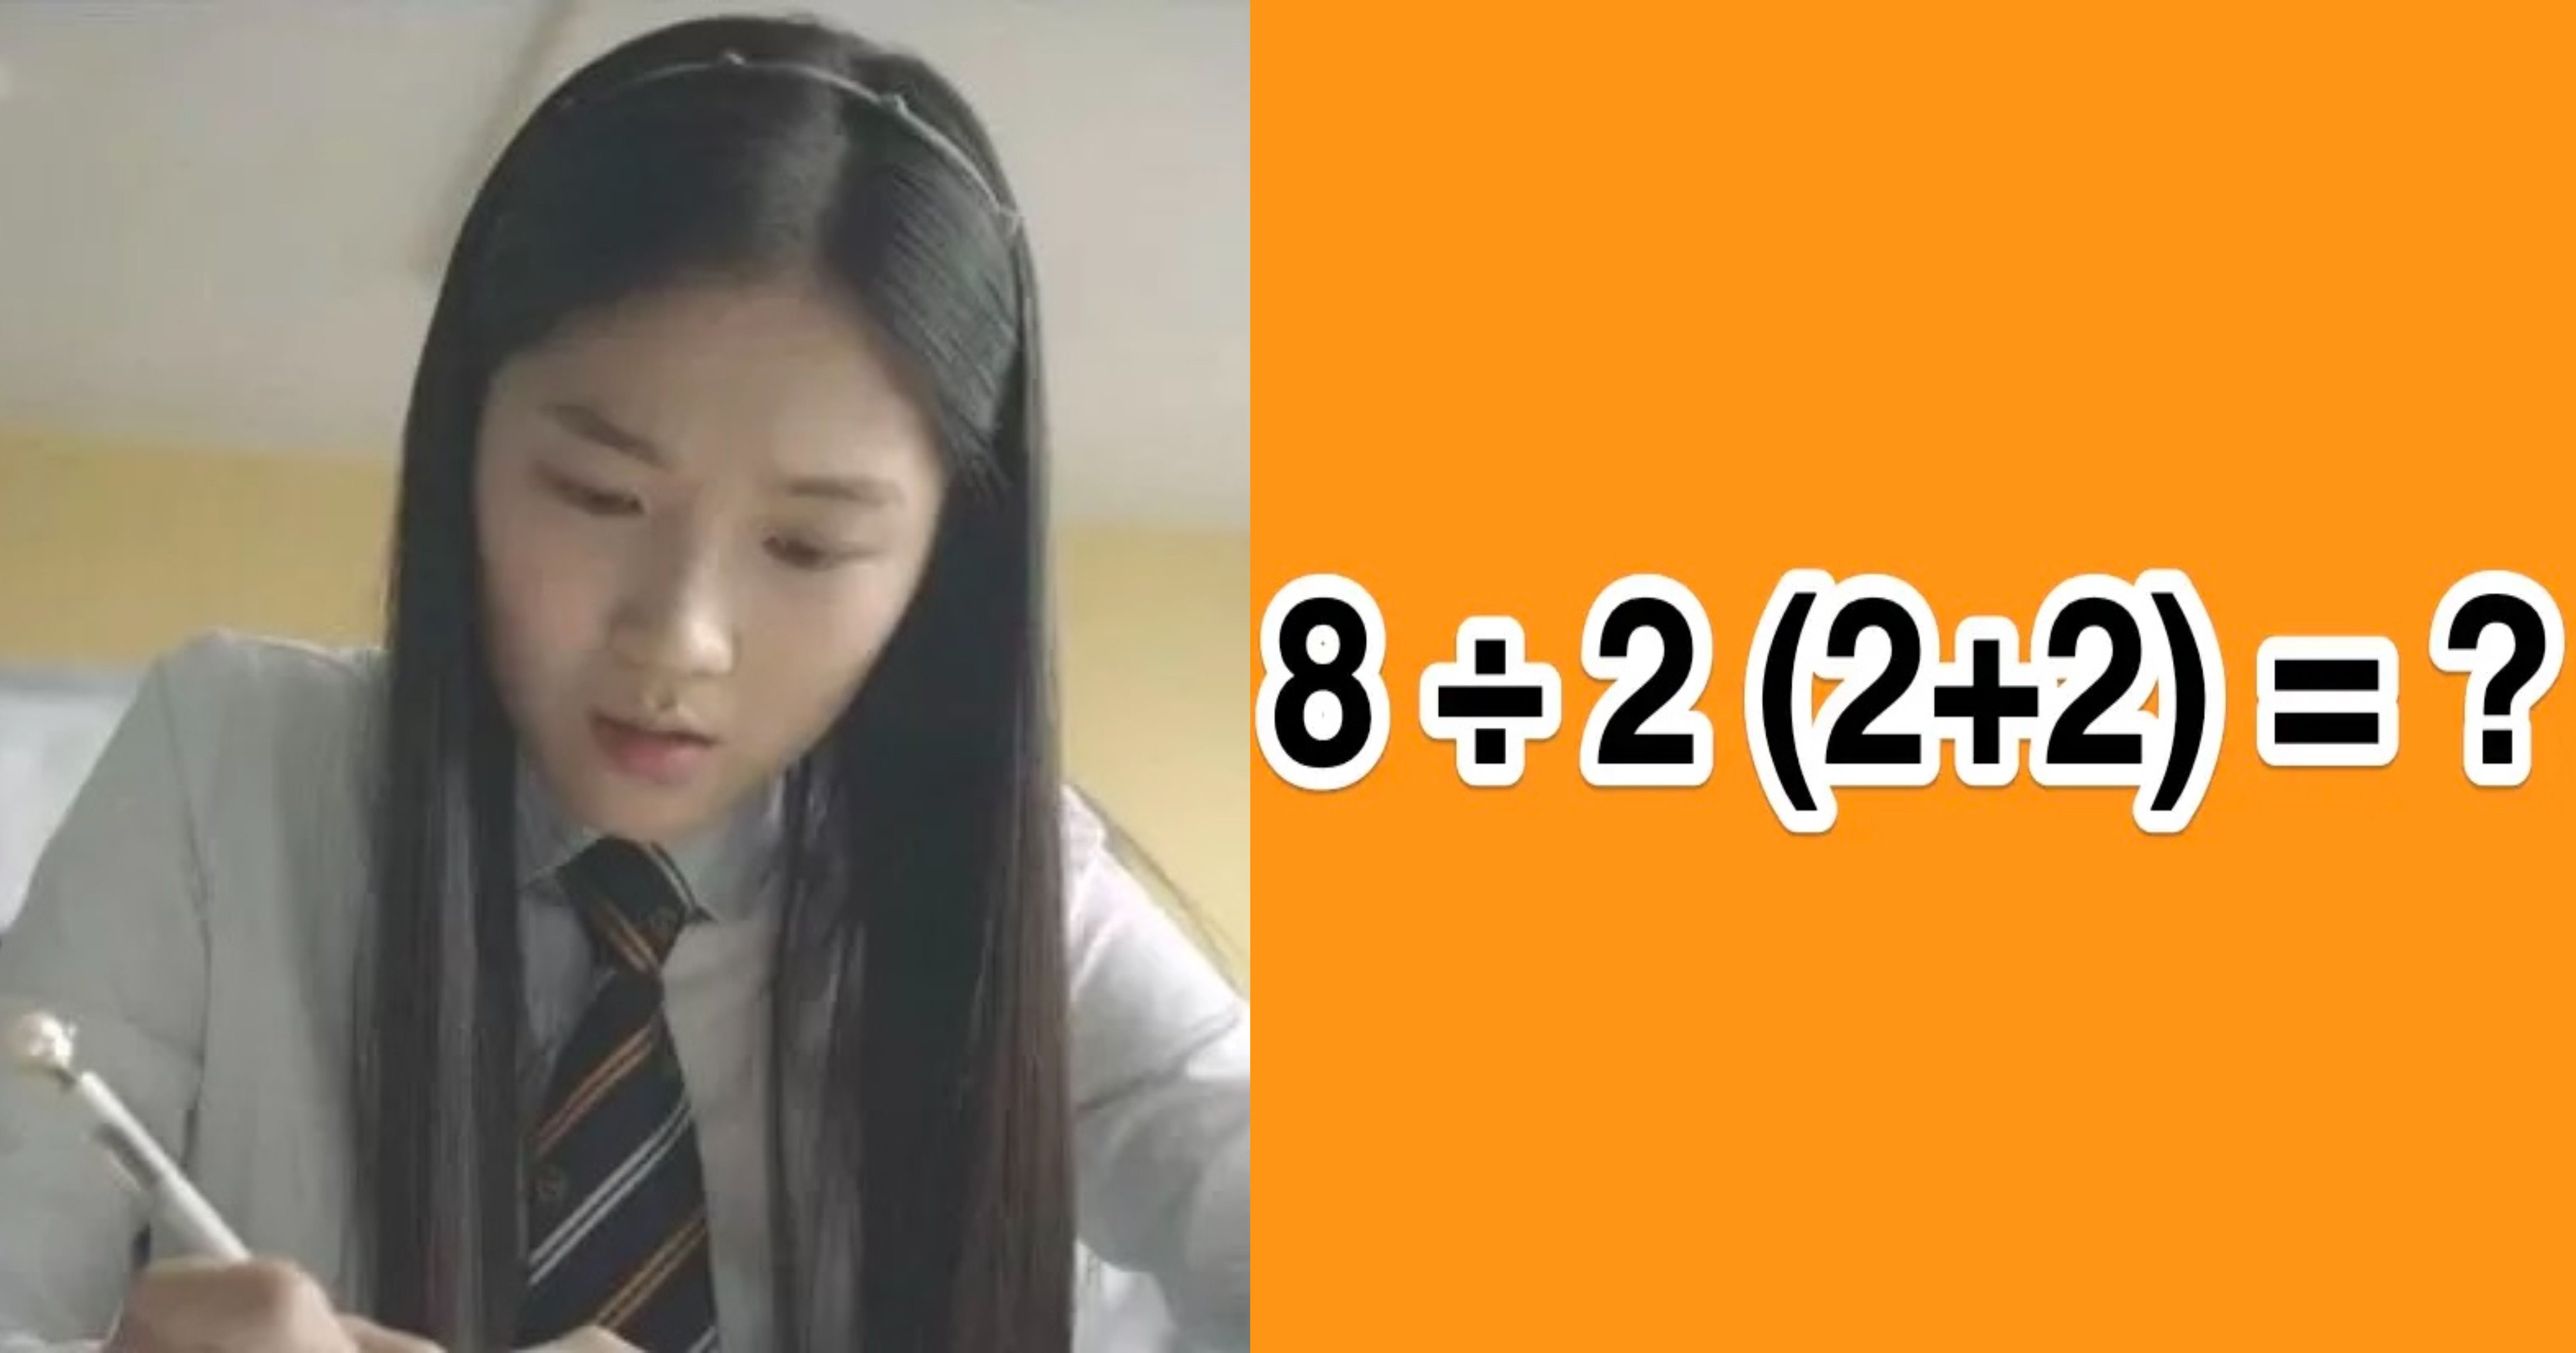 bdb6c556 8bff 414e b4e0 2312ea9c16e7.jpeg?resize=412,232 - "8÷2(2+2)=의 정답은?"..한국인들 절반이 틀린다고 난리 난 문제의 정답